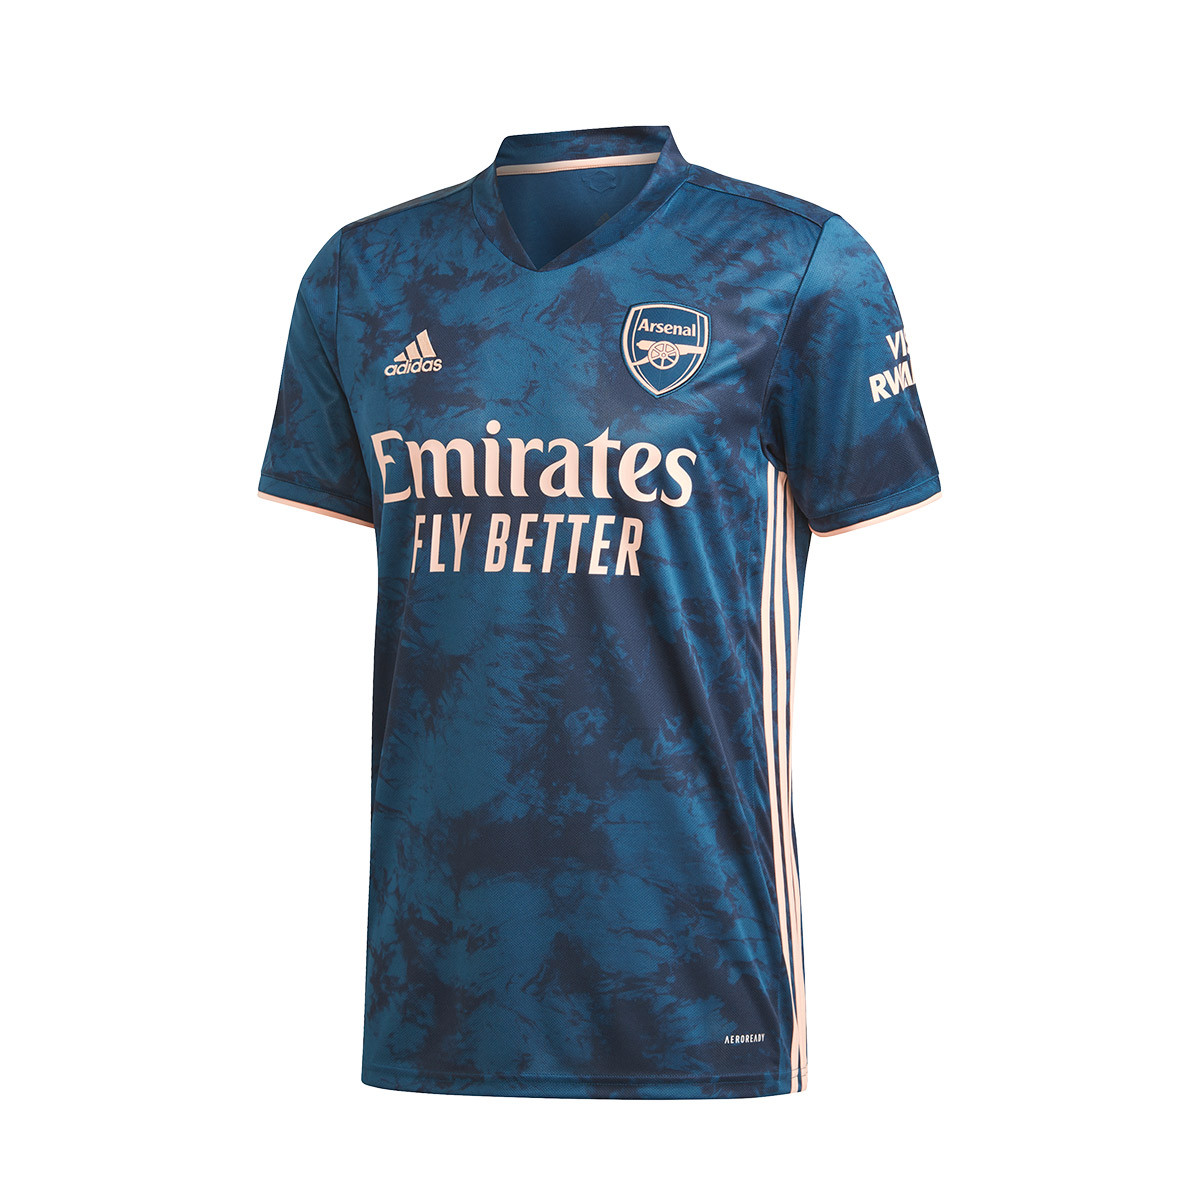 Buy > camiseta del arsenal 2021 > in stock